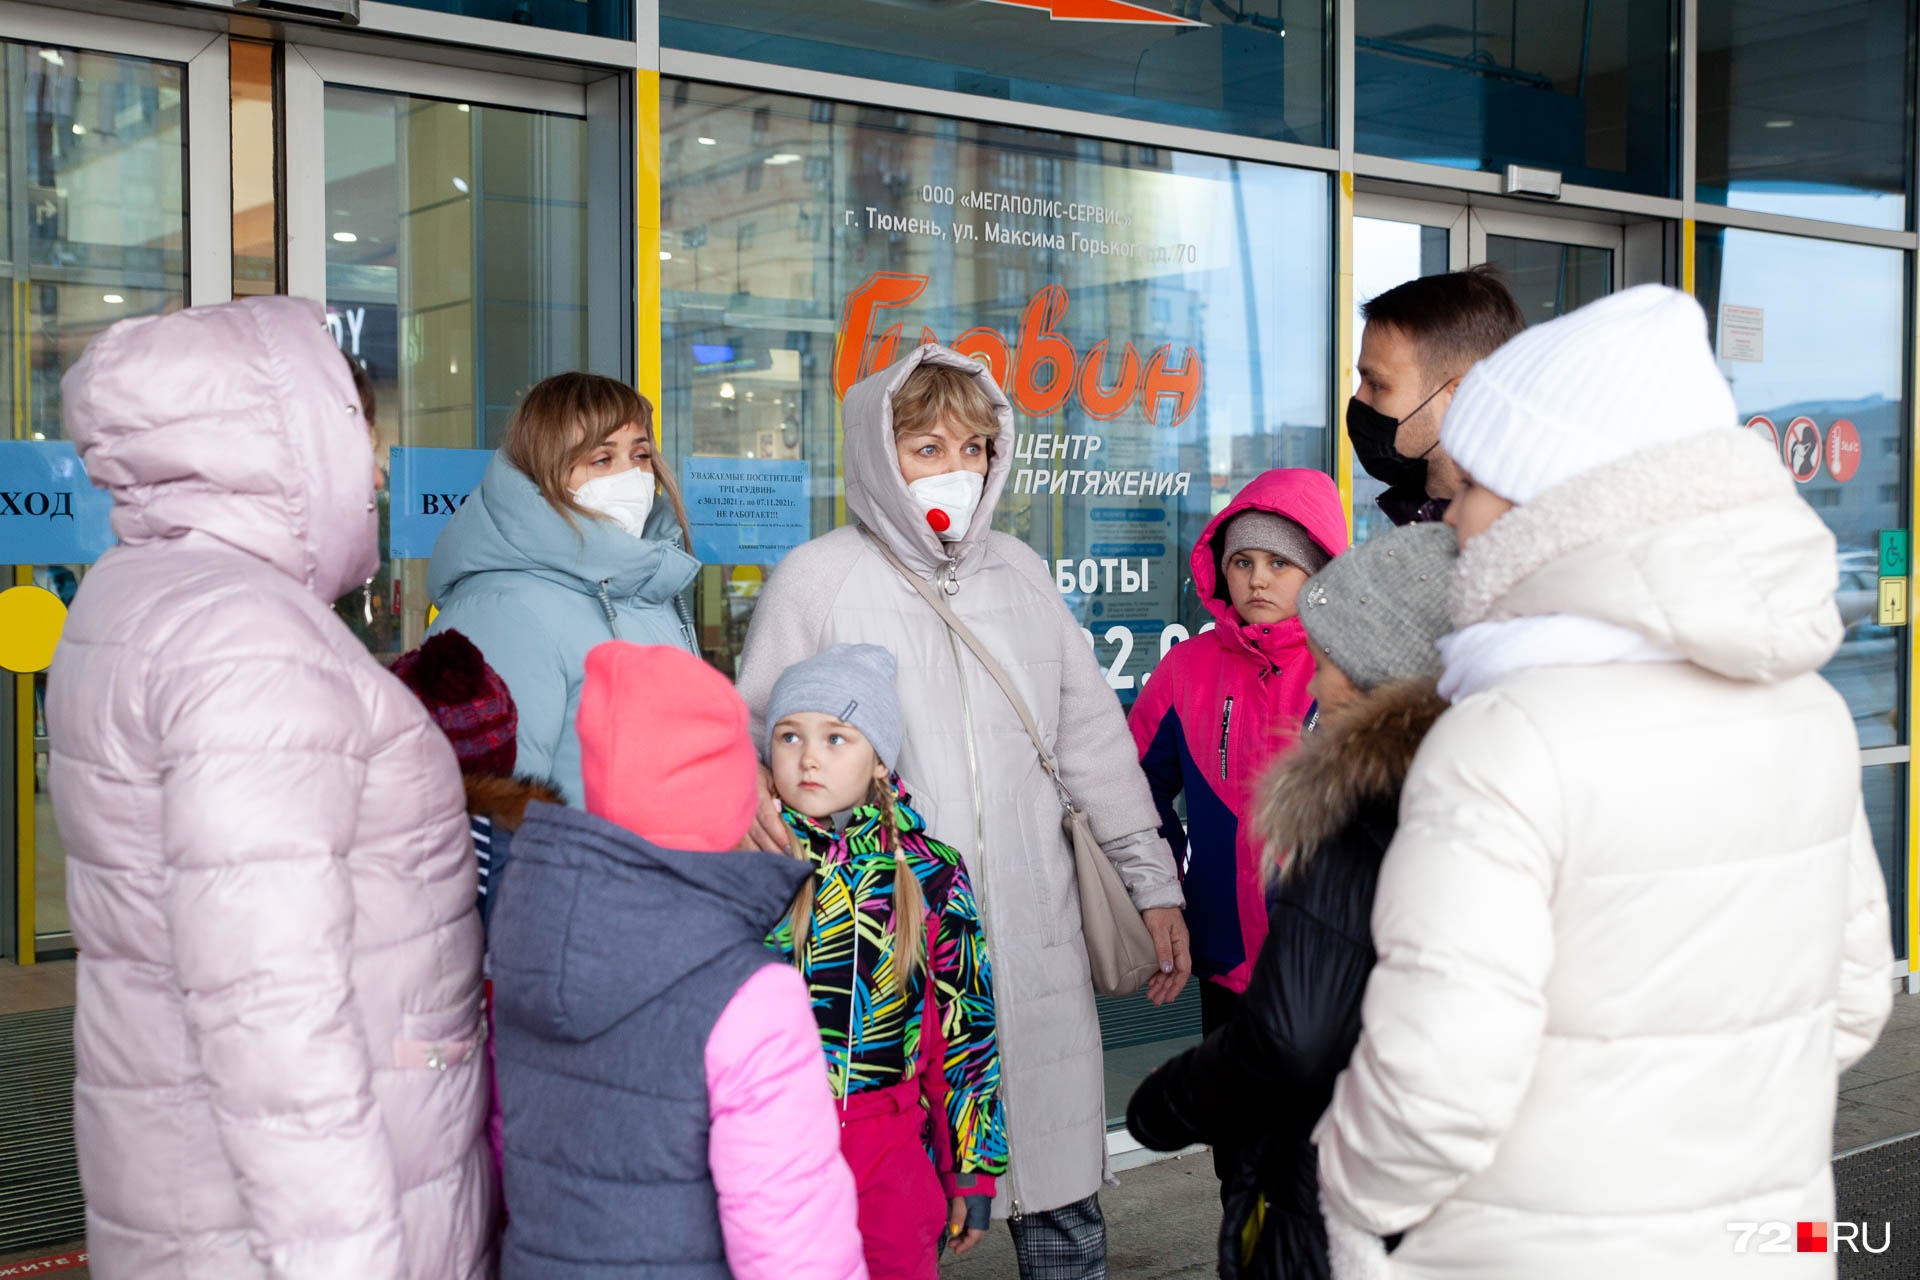 Семья из Кемерово приехала в Тюмень отдохнуть и купить одежду, но в ТЦ их не пустили — код оказался просроченным